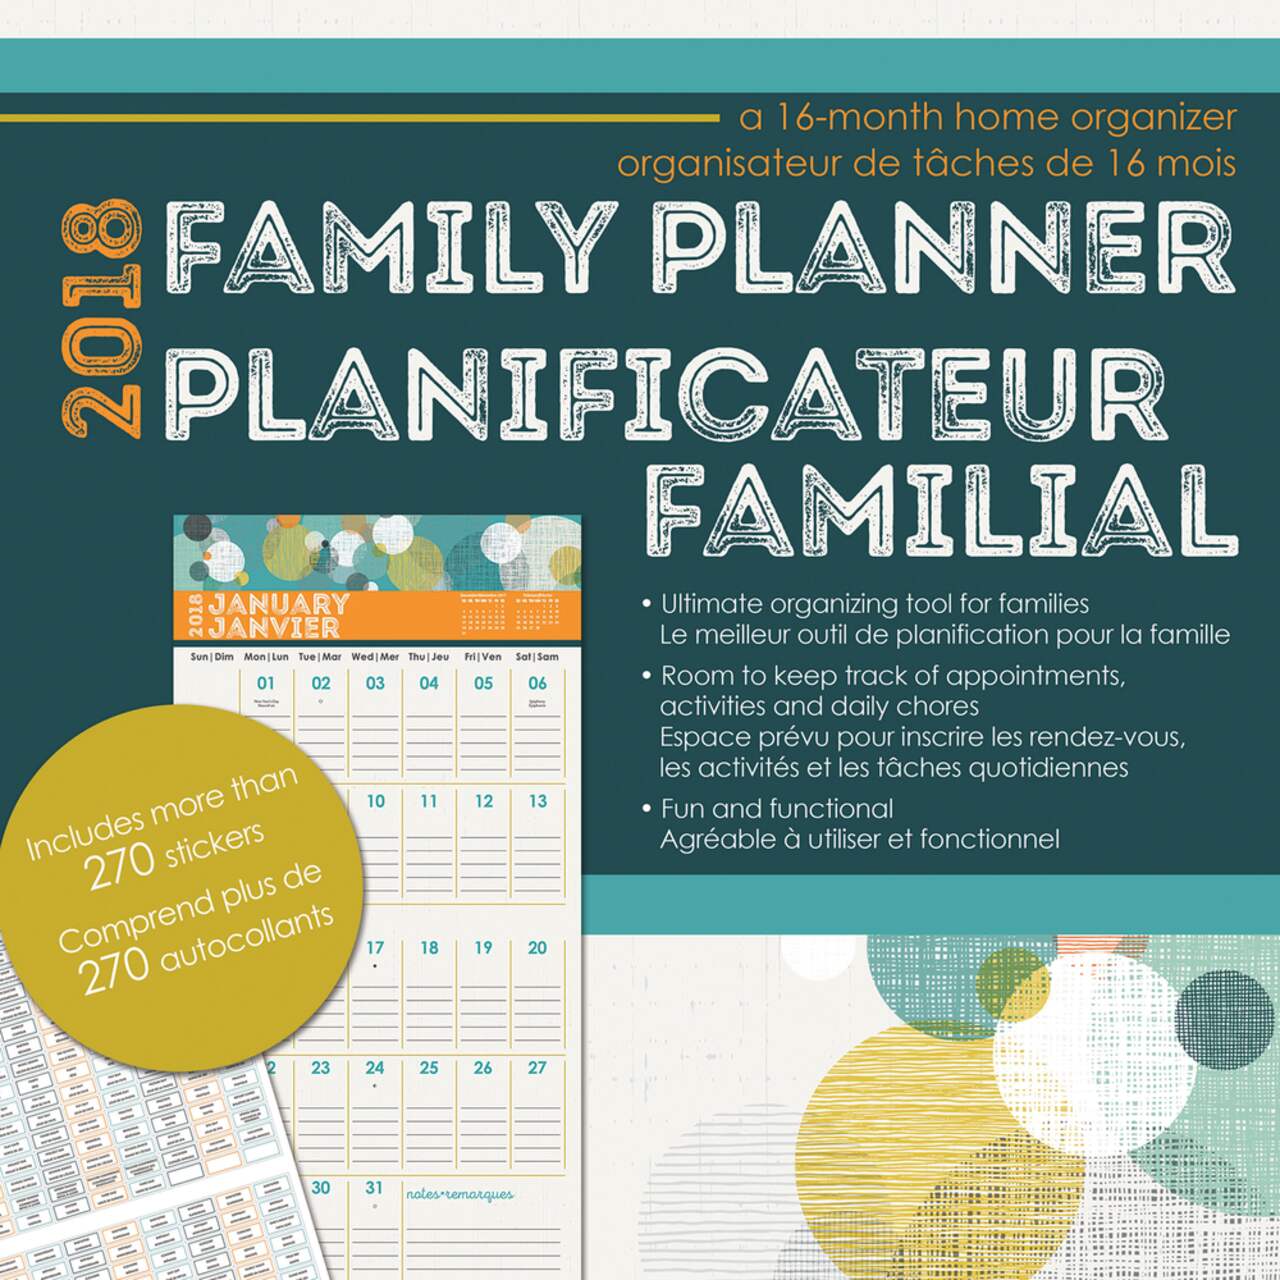 Calendrier mural familial avec planification et organisation de 12